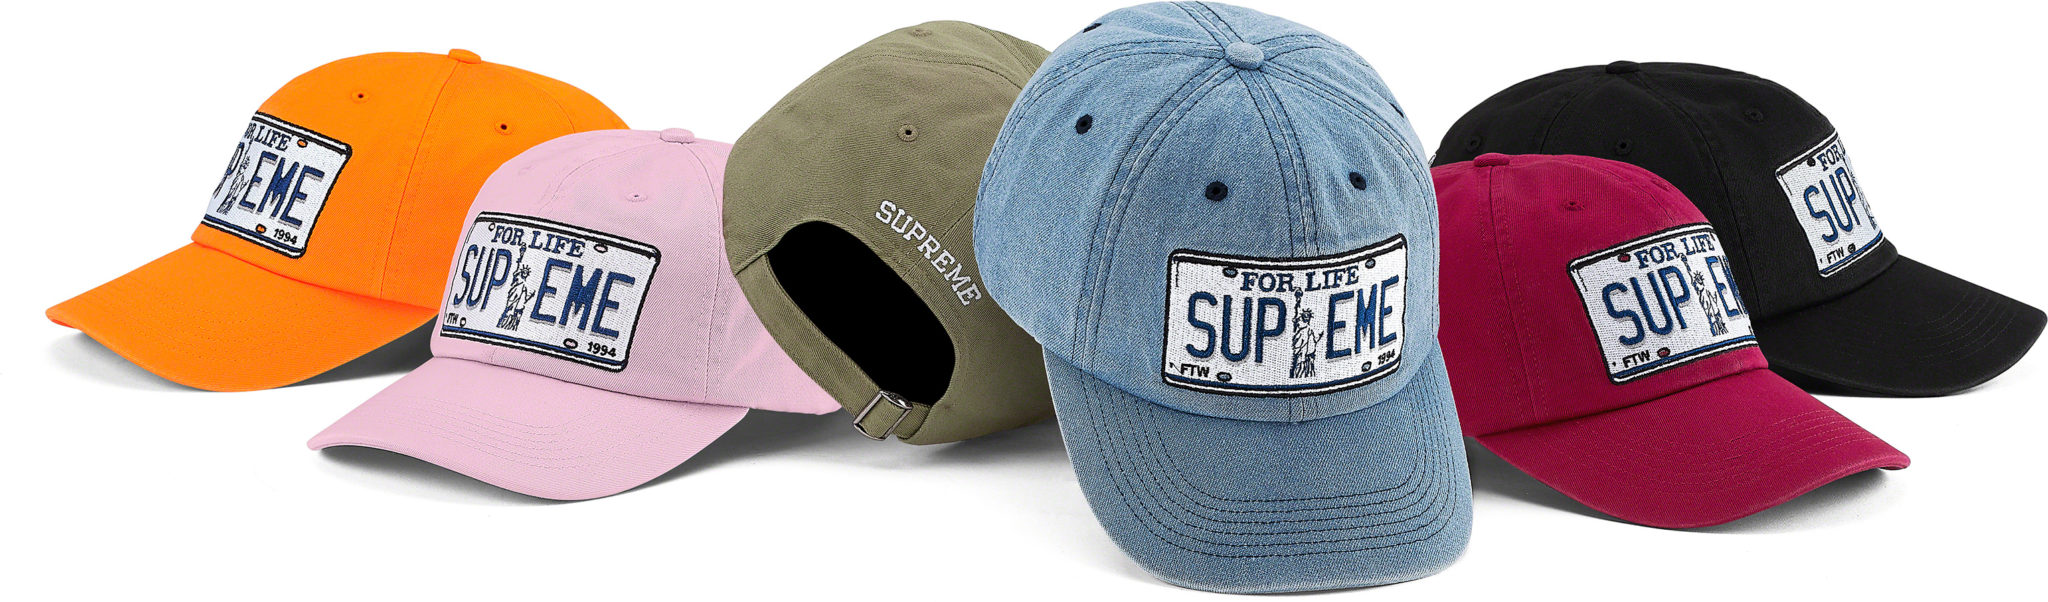 【ハット キャップ/HATS CAPS まとめ】 シュプリーム (SUPREME) 2020 SPRING/SUMMER コレクション (2020年 春夏)